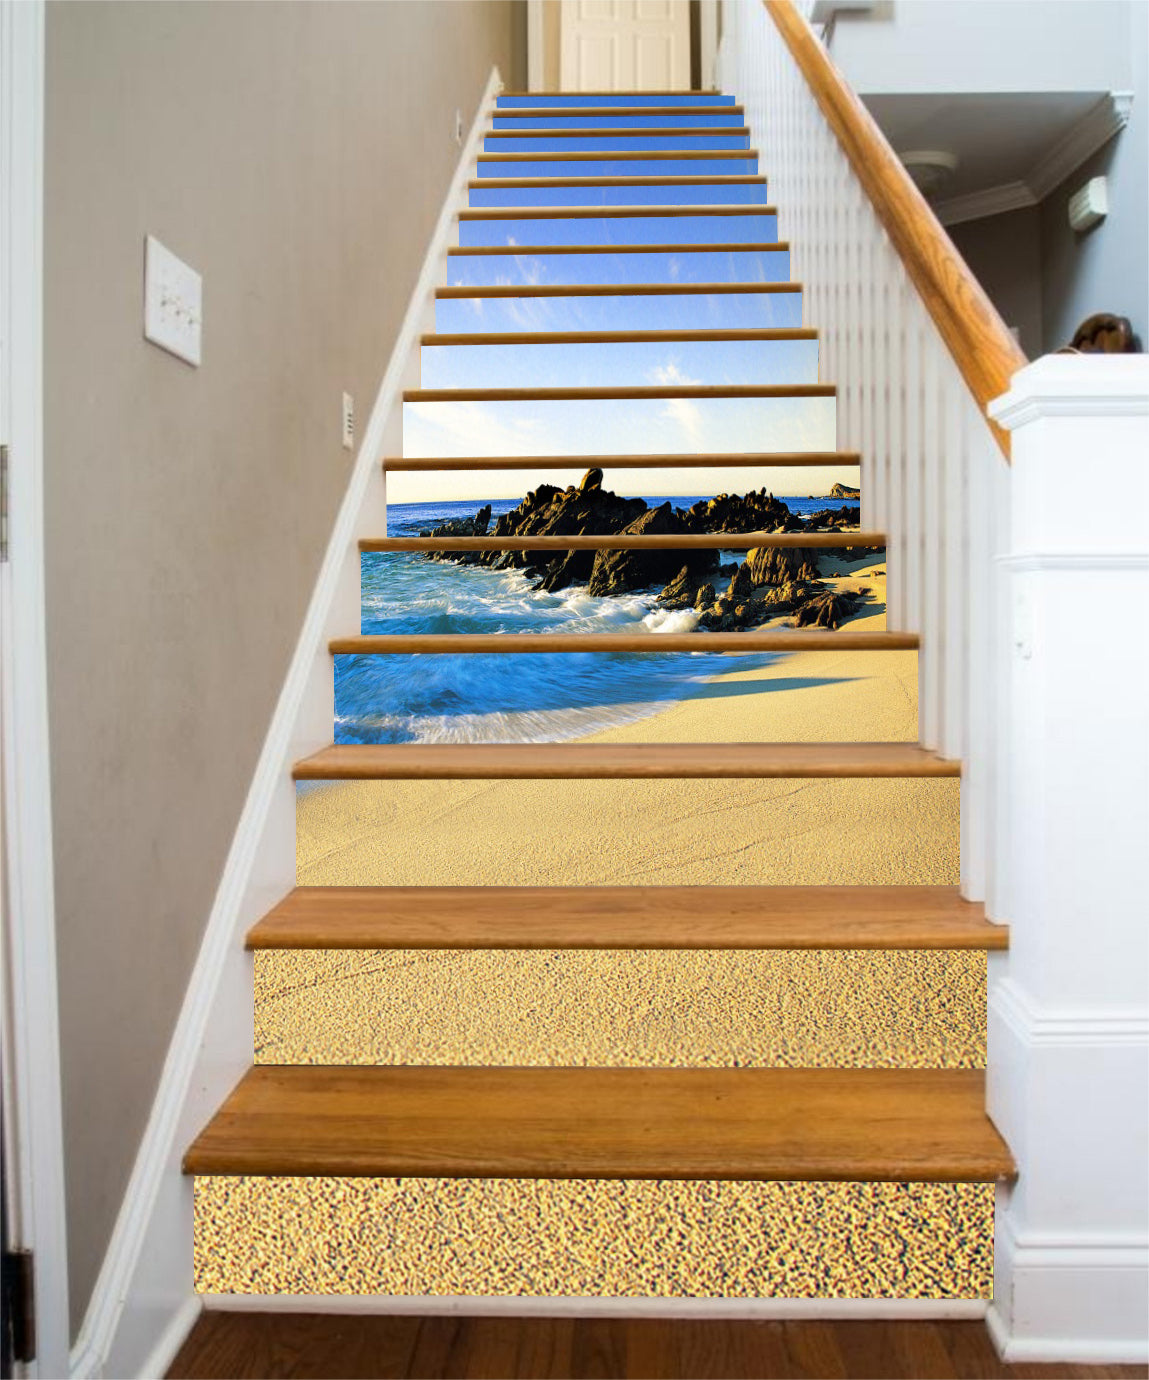 3D Golden Beach 165 Stair Risers